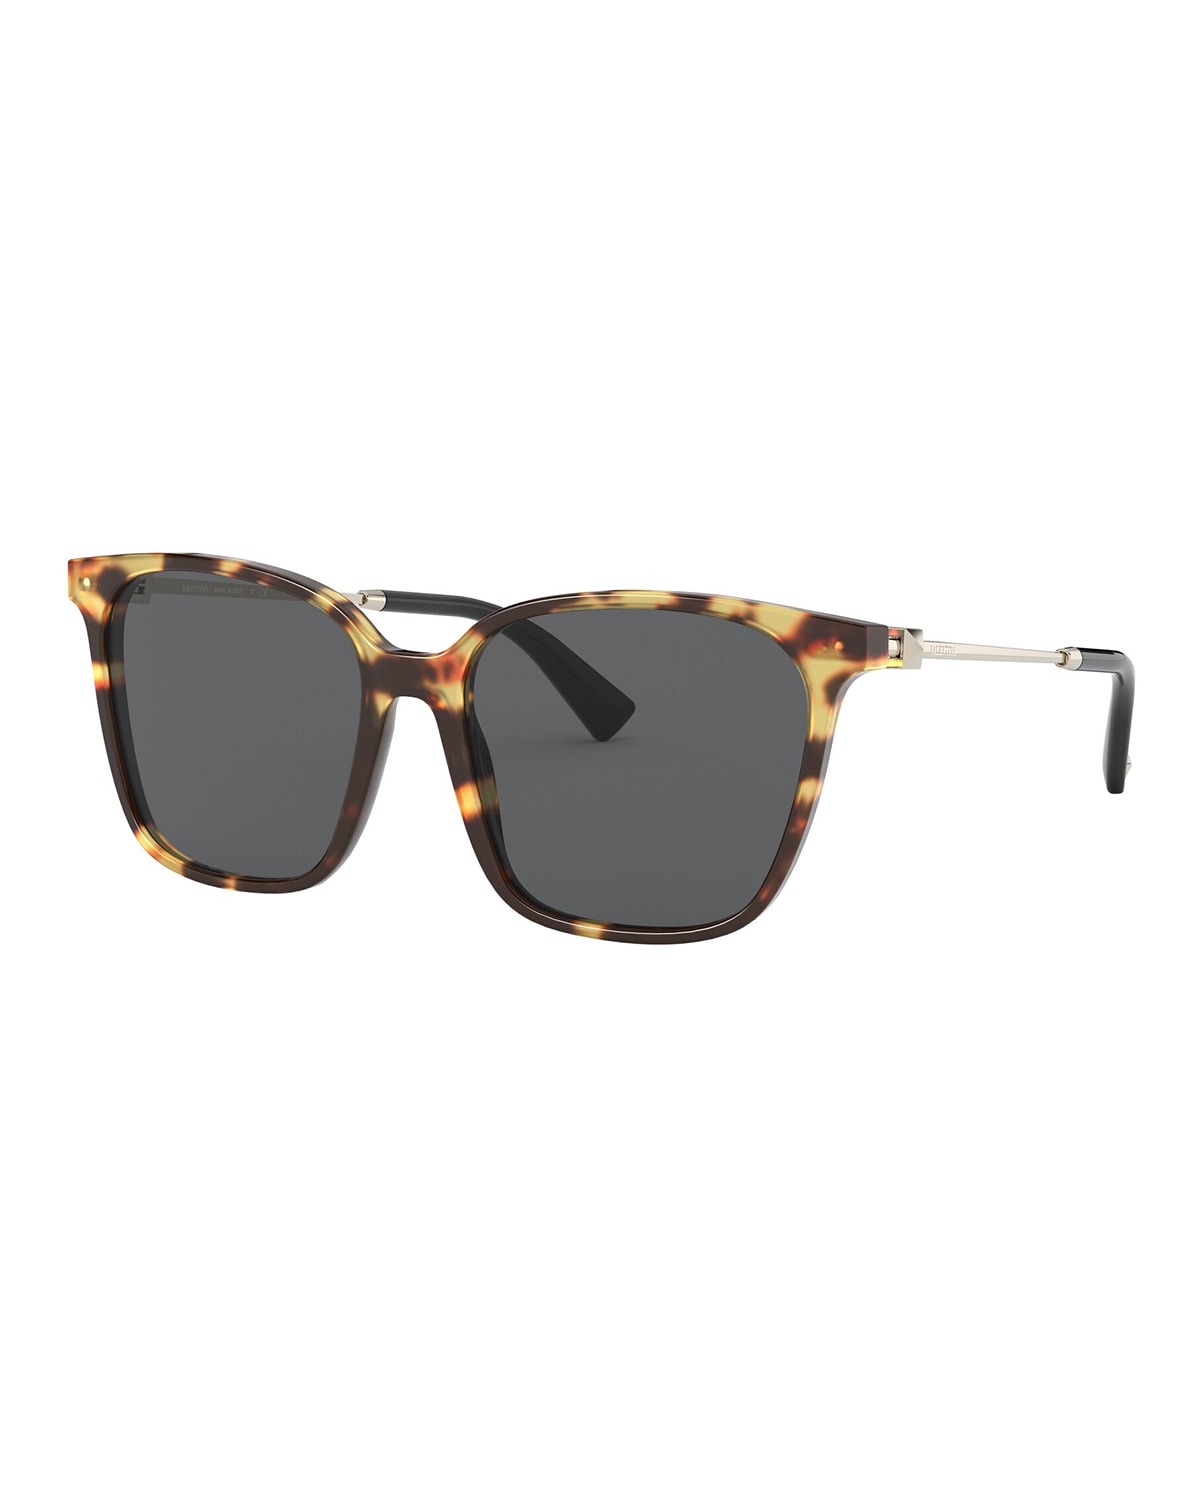 Valentino Square Acetate/Metal Sunglasses